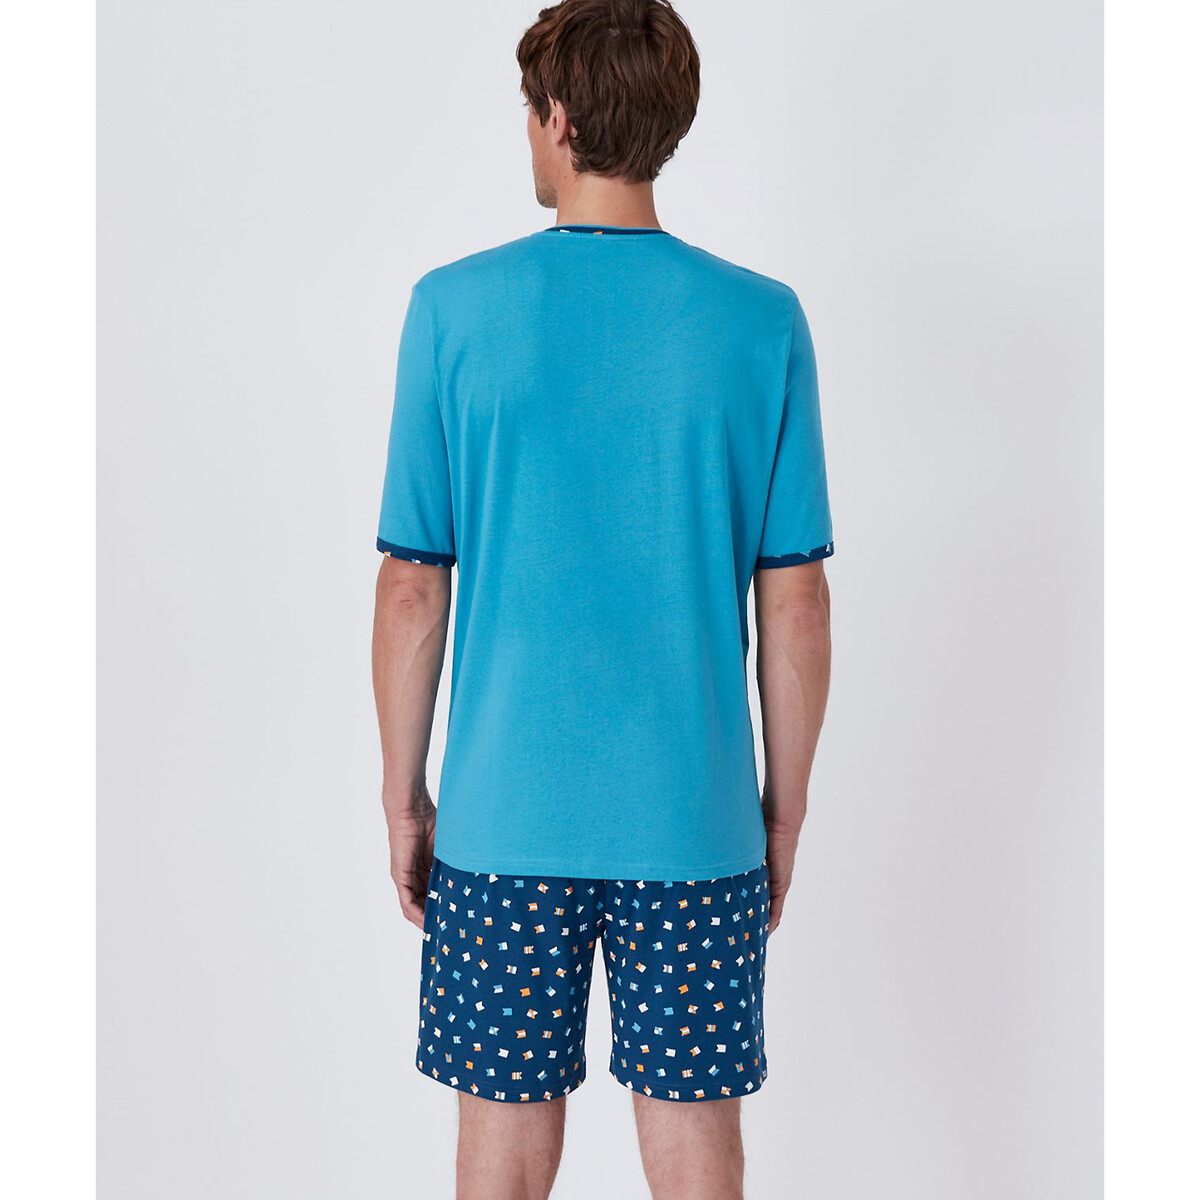 Пижама С шортами и V-образным вырезом с принтом XXL синий LaRedoute, размер XXL - фото 3